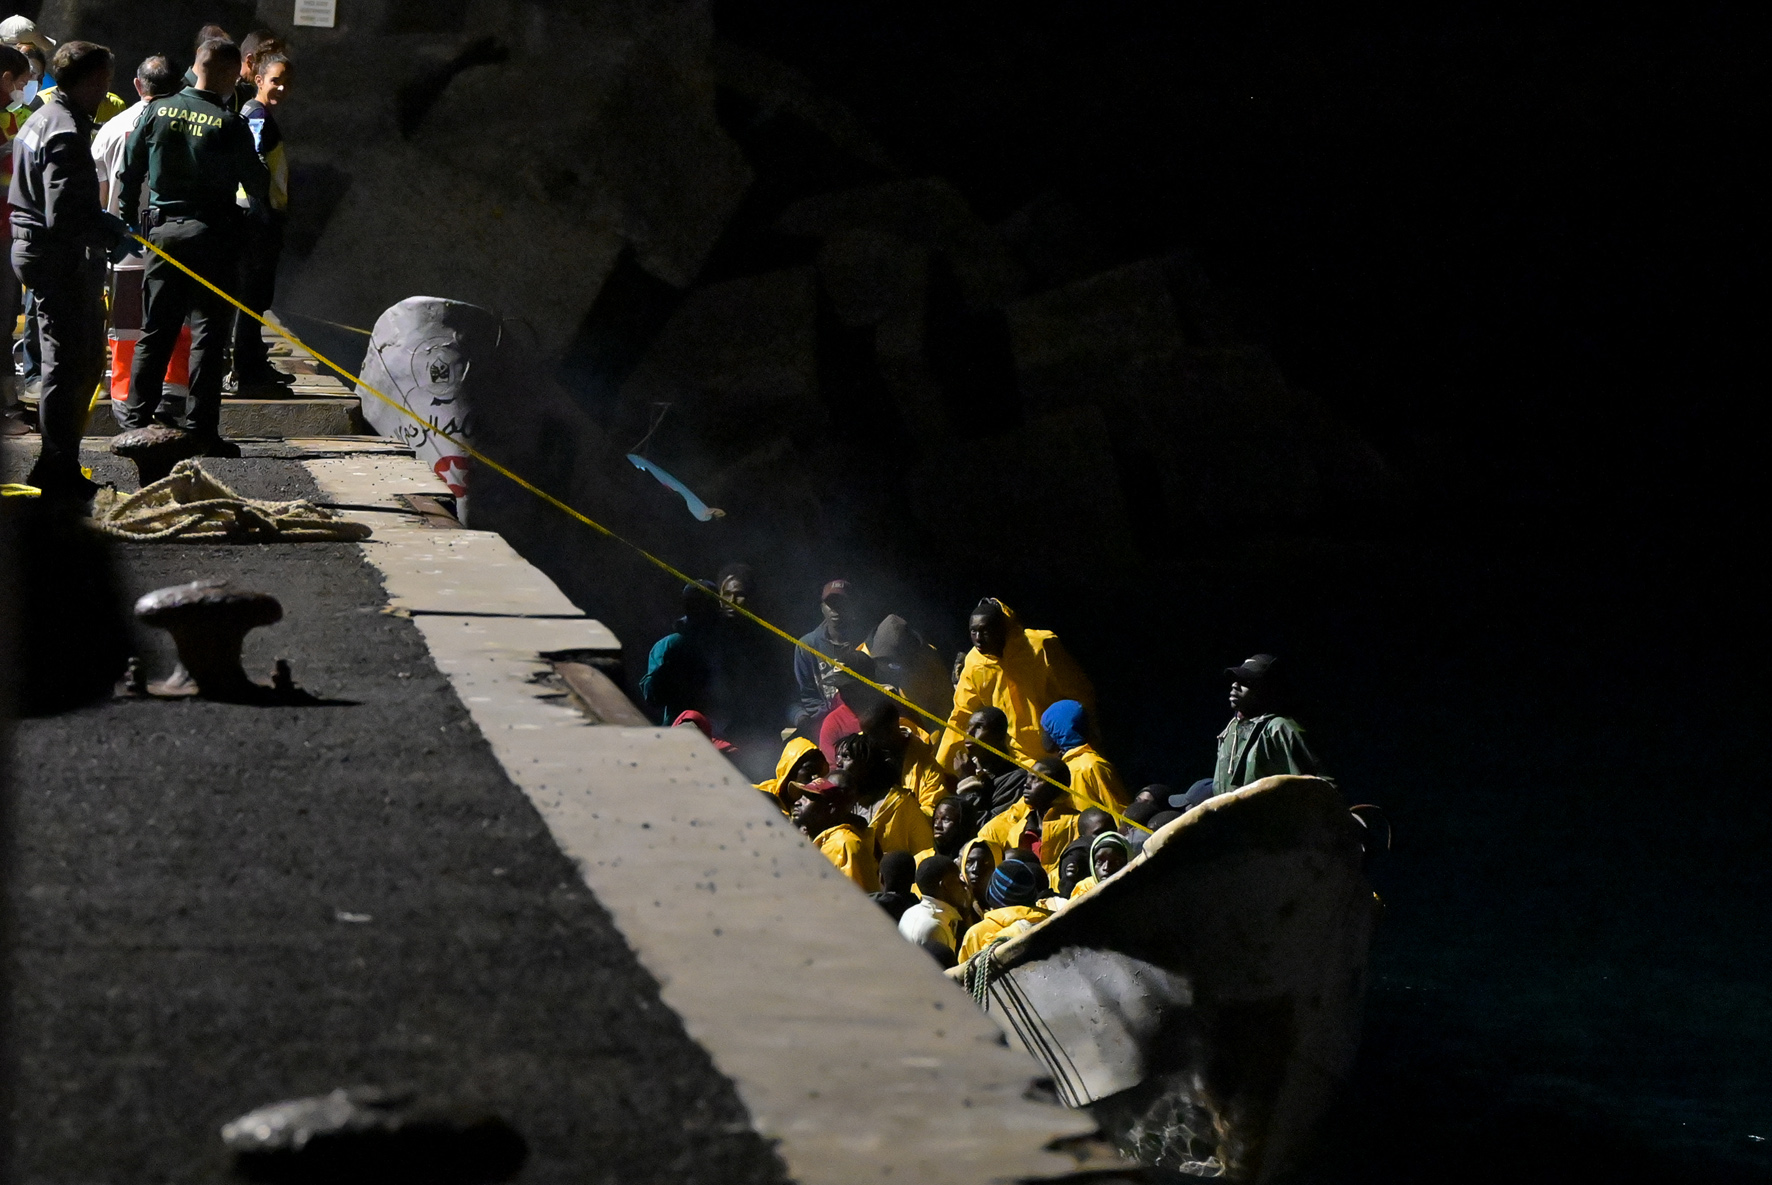 Salvamento Marítimo rescata dos Cayucos con 181 inmigrantes en la noche de hoy en aguas cercanas a El Hierro